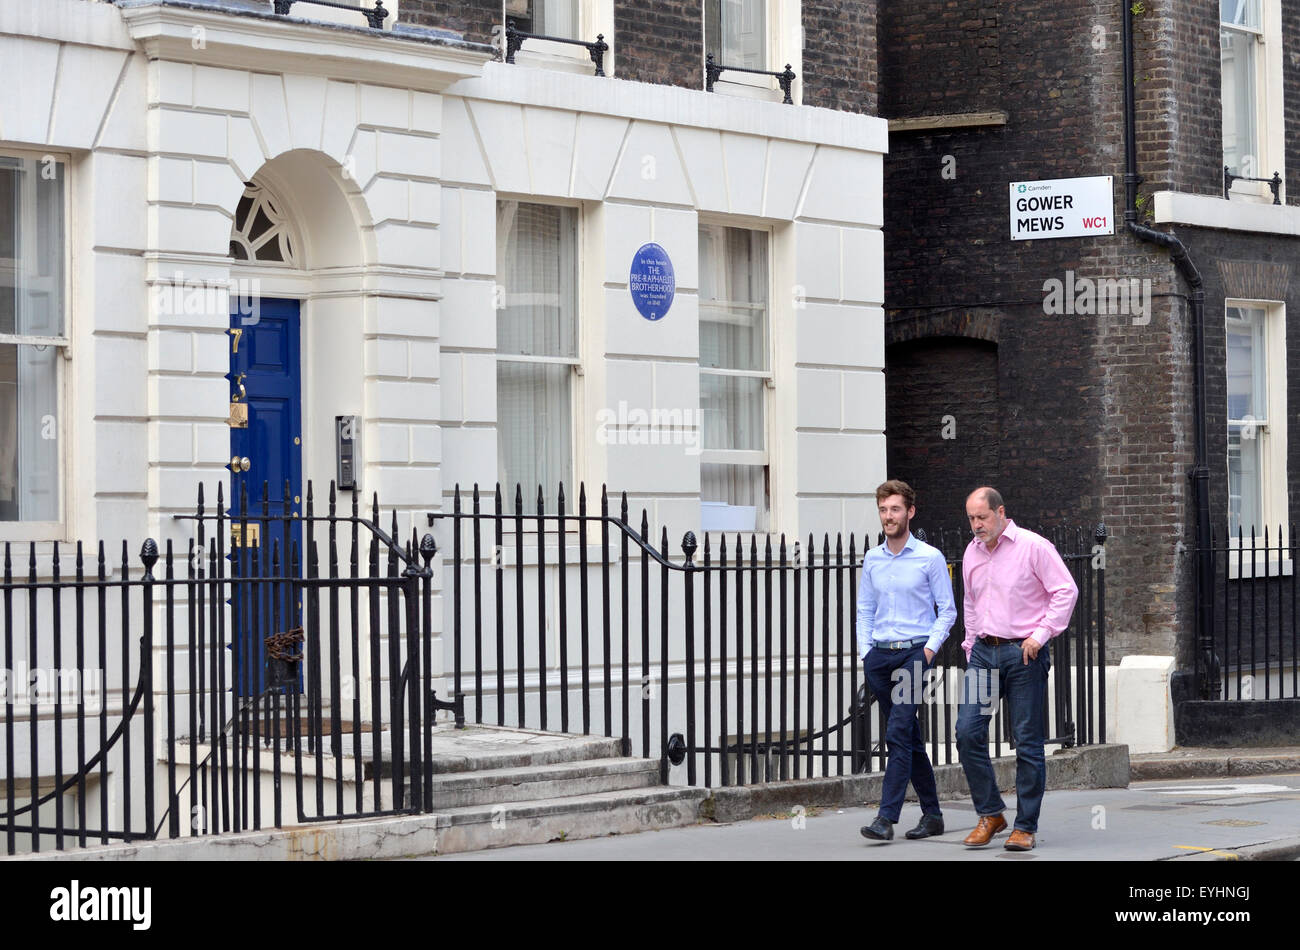 London, England, Vereinigtes Königreich.  Camden, 7 Gower Street, WC1. Blaue Plakette heißt es "In diesem Haus die präraffaelitische Bruderschaft gegründet wurde" Stockfoto